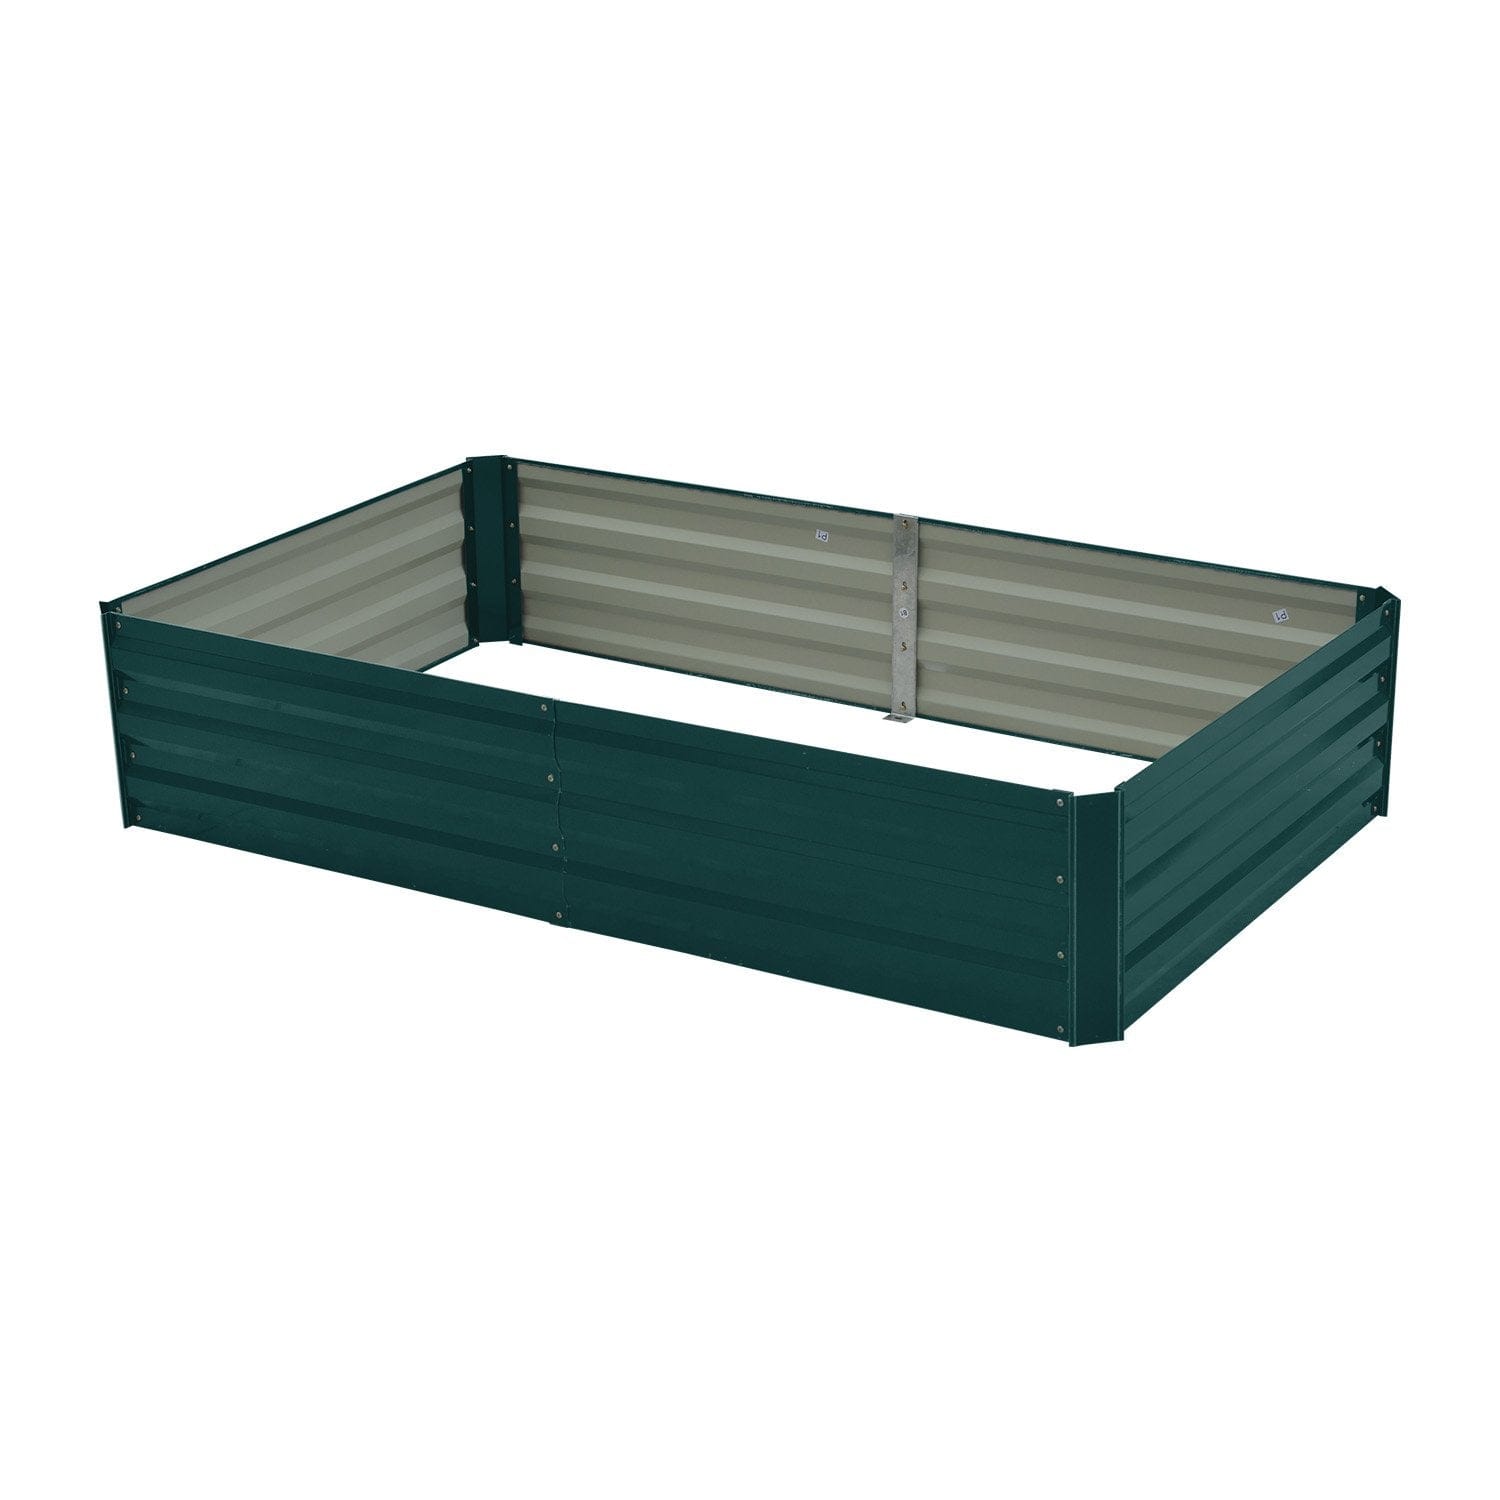 Garden Bed 150 x 90 x 30cm Galvanized Steel - Green